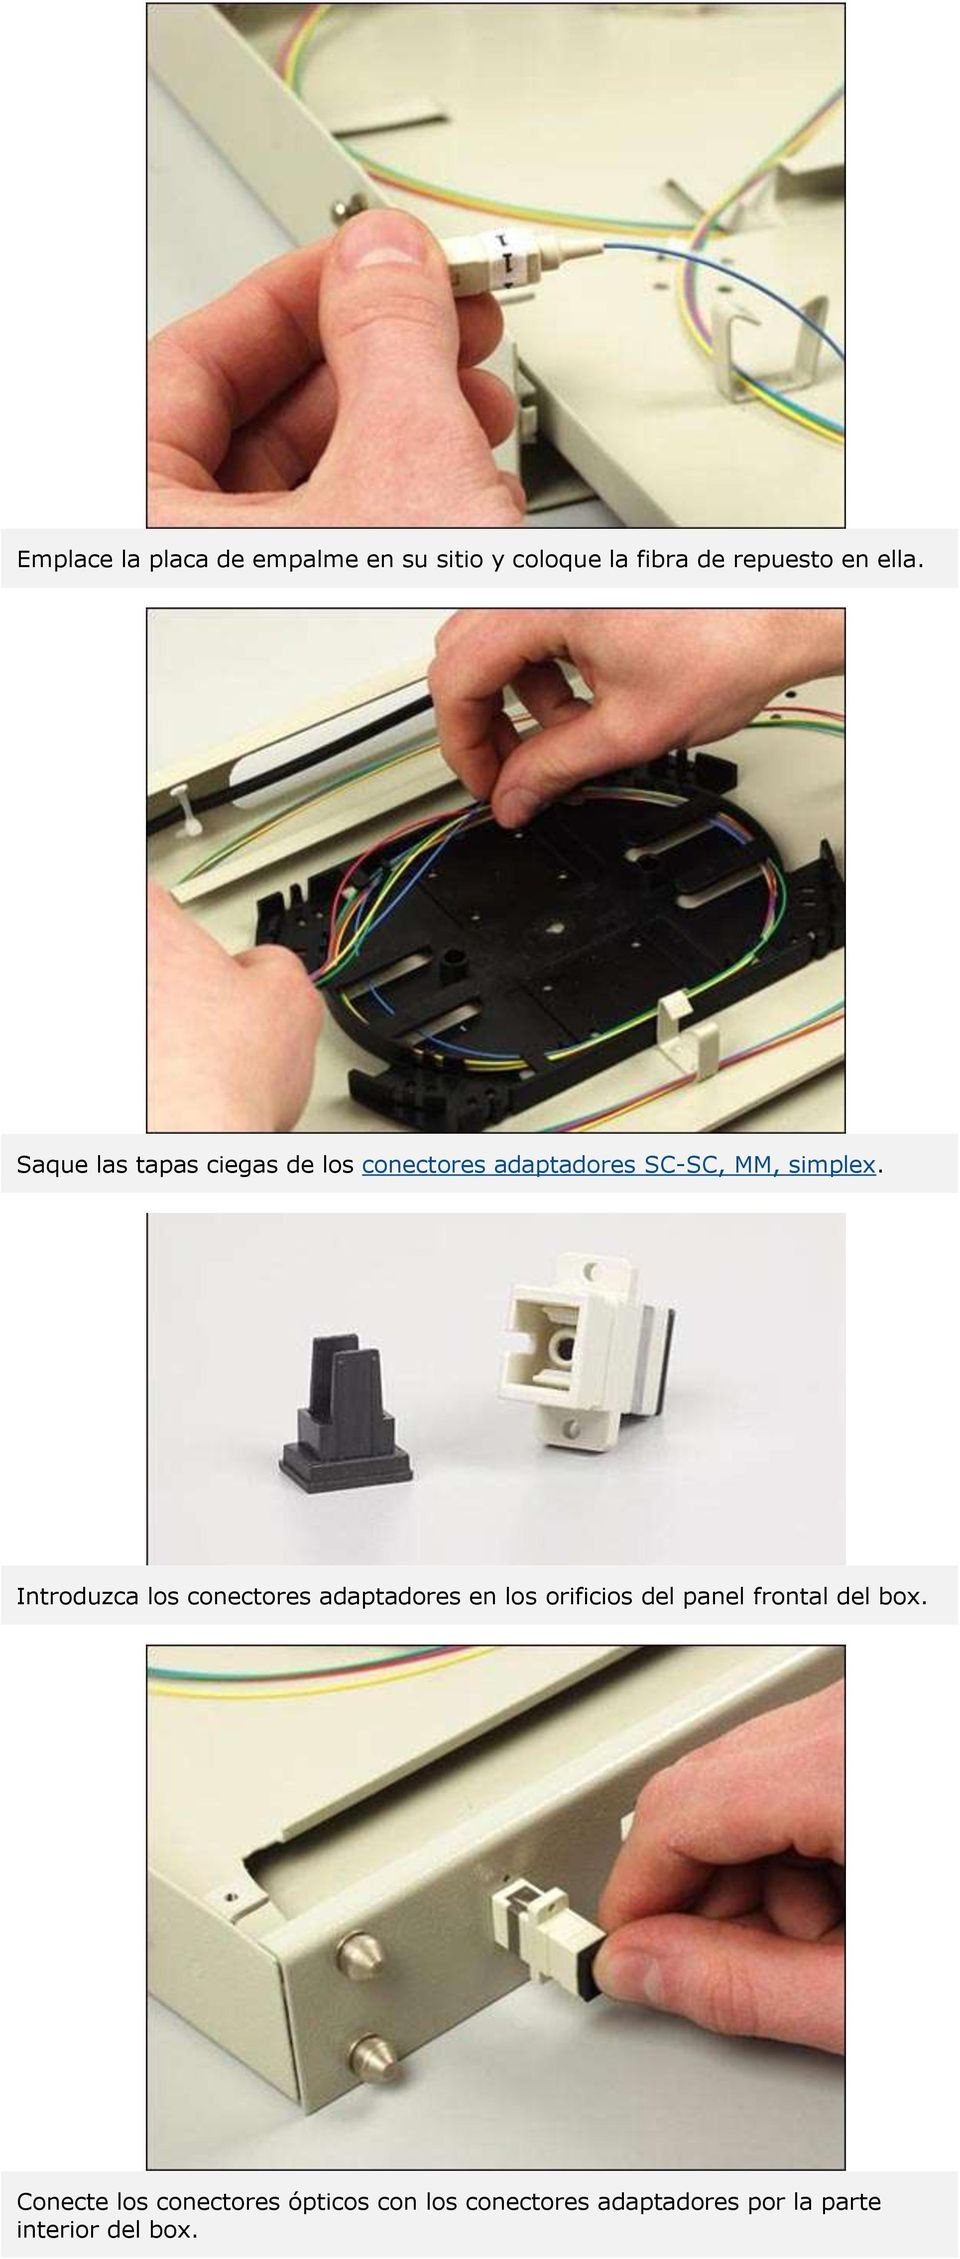 Introduzca los conectores adaptadores en los orificios del panel frontal del box.